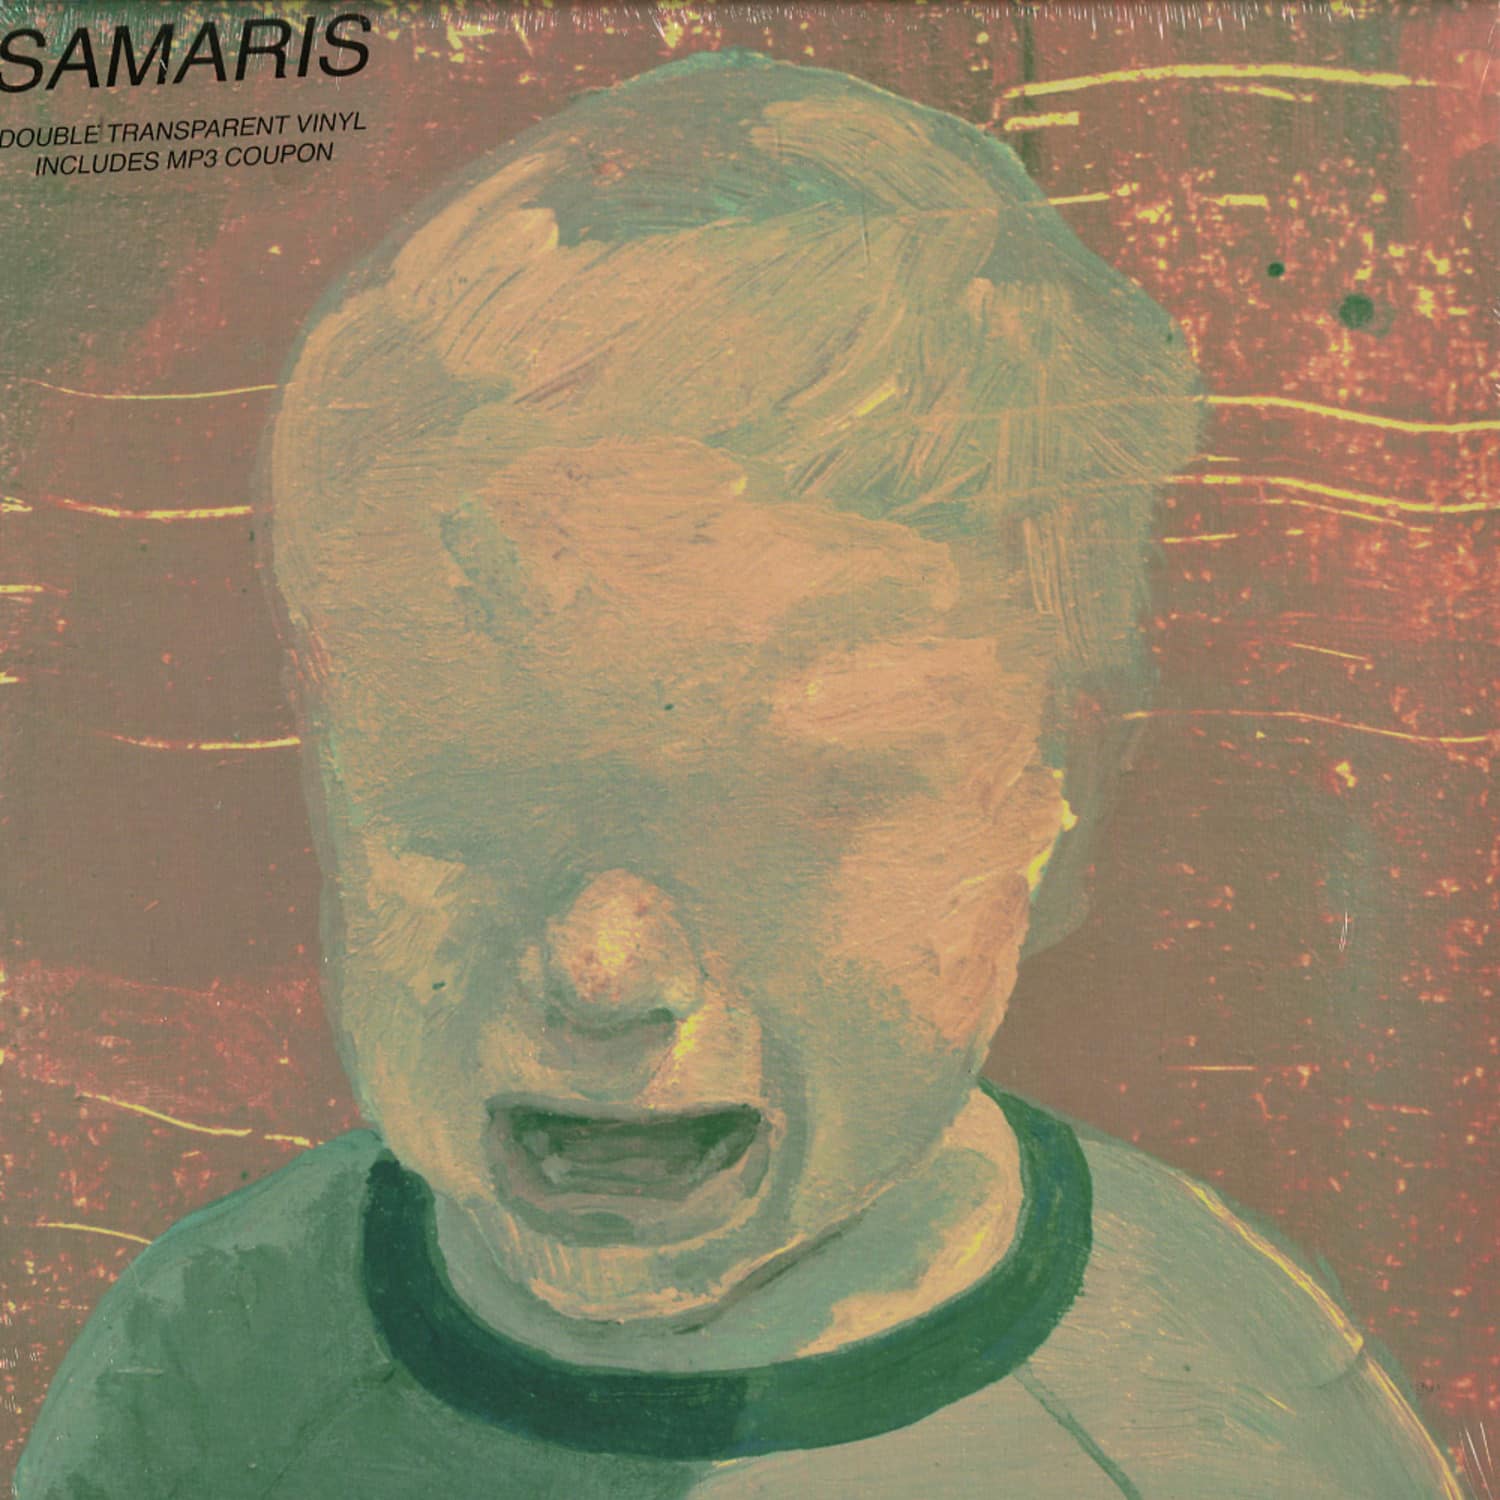 Samaris - SAMARIS 